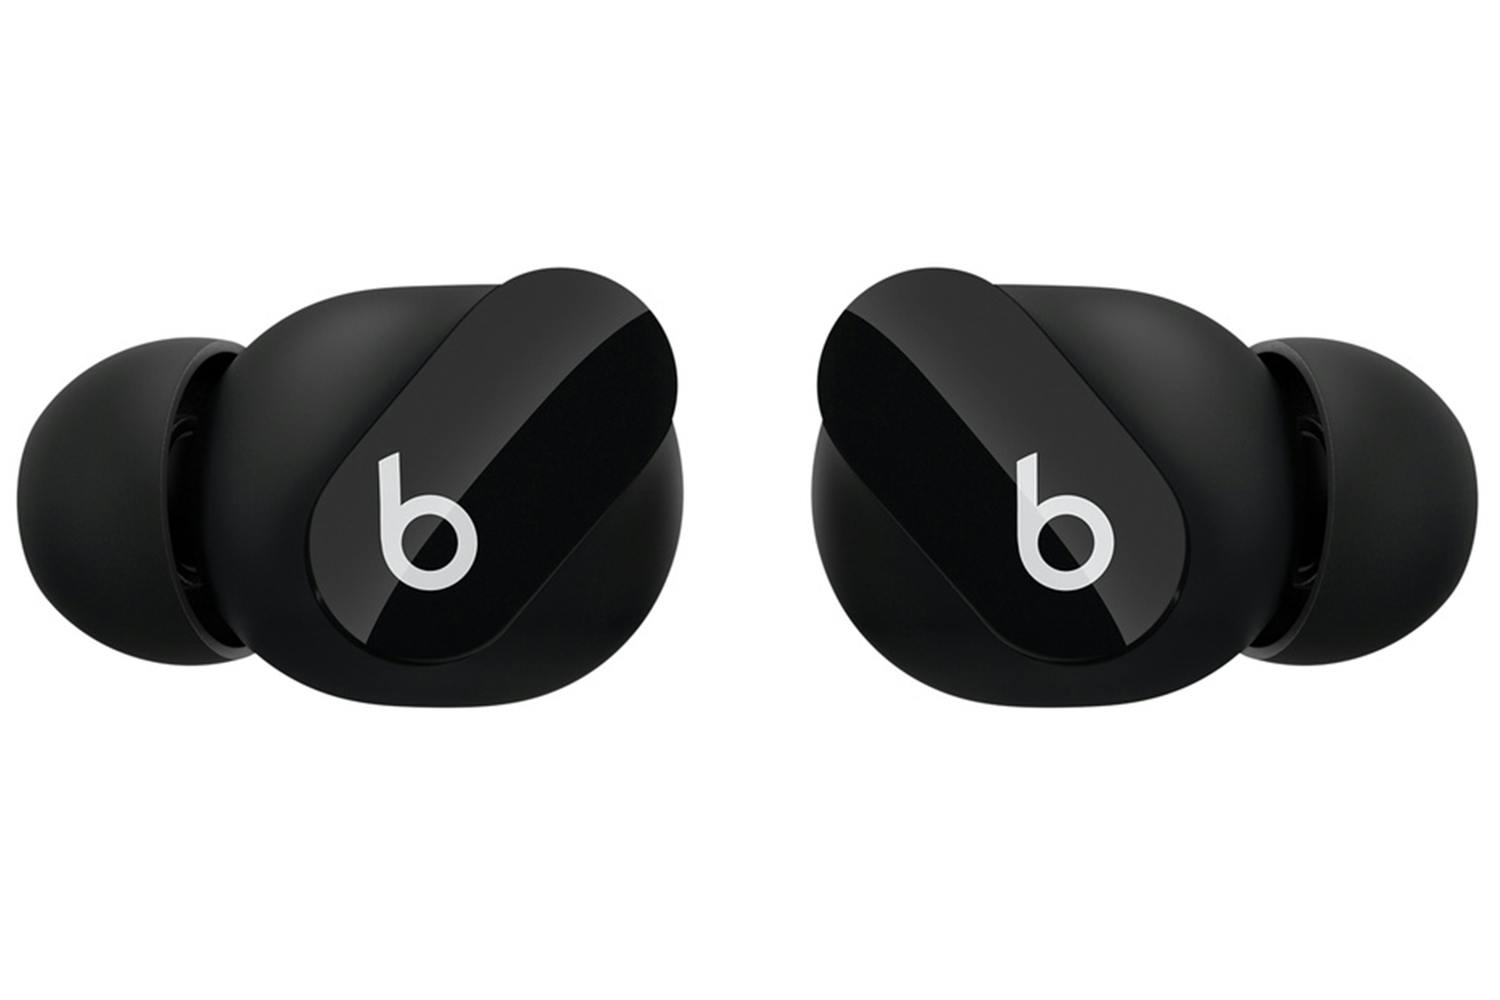 Beats Studio Buds True Wireless Noise Cancelling earphones